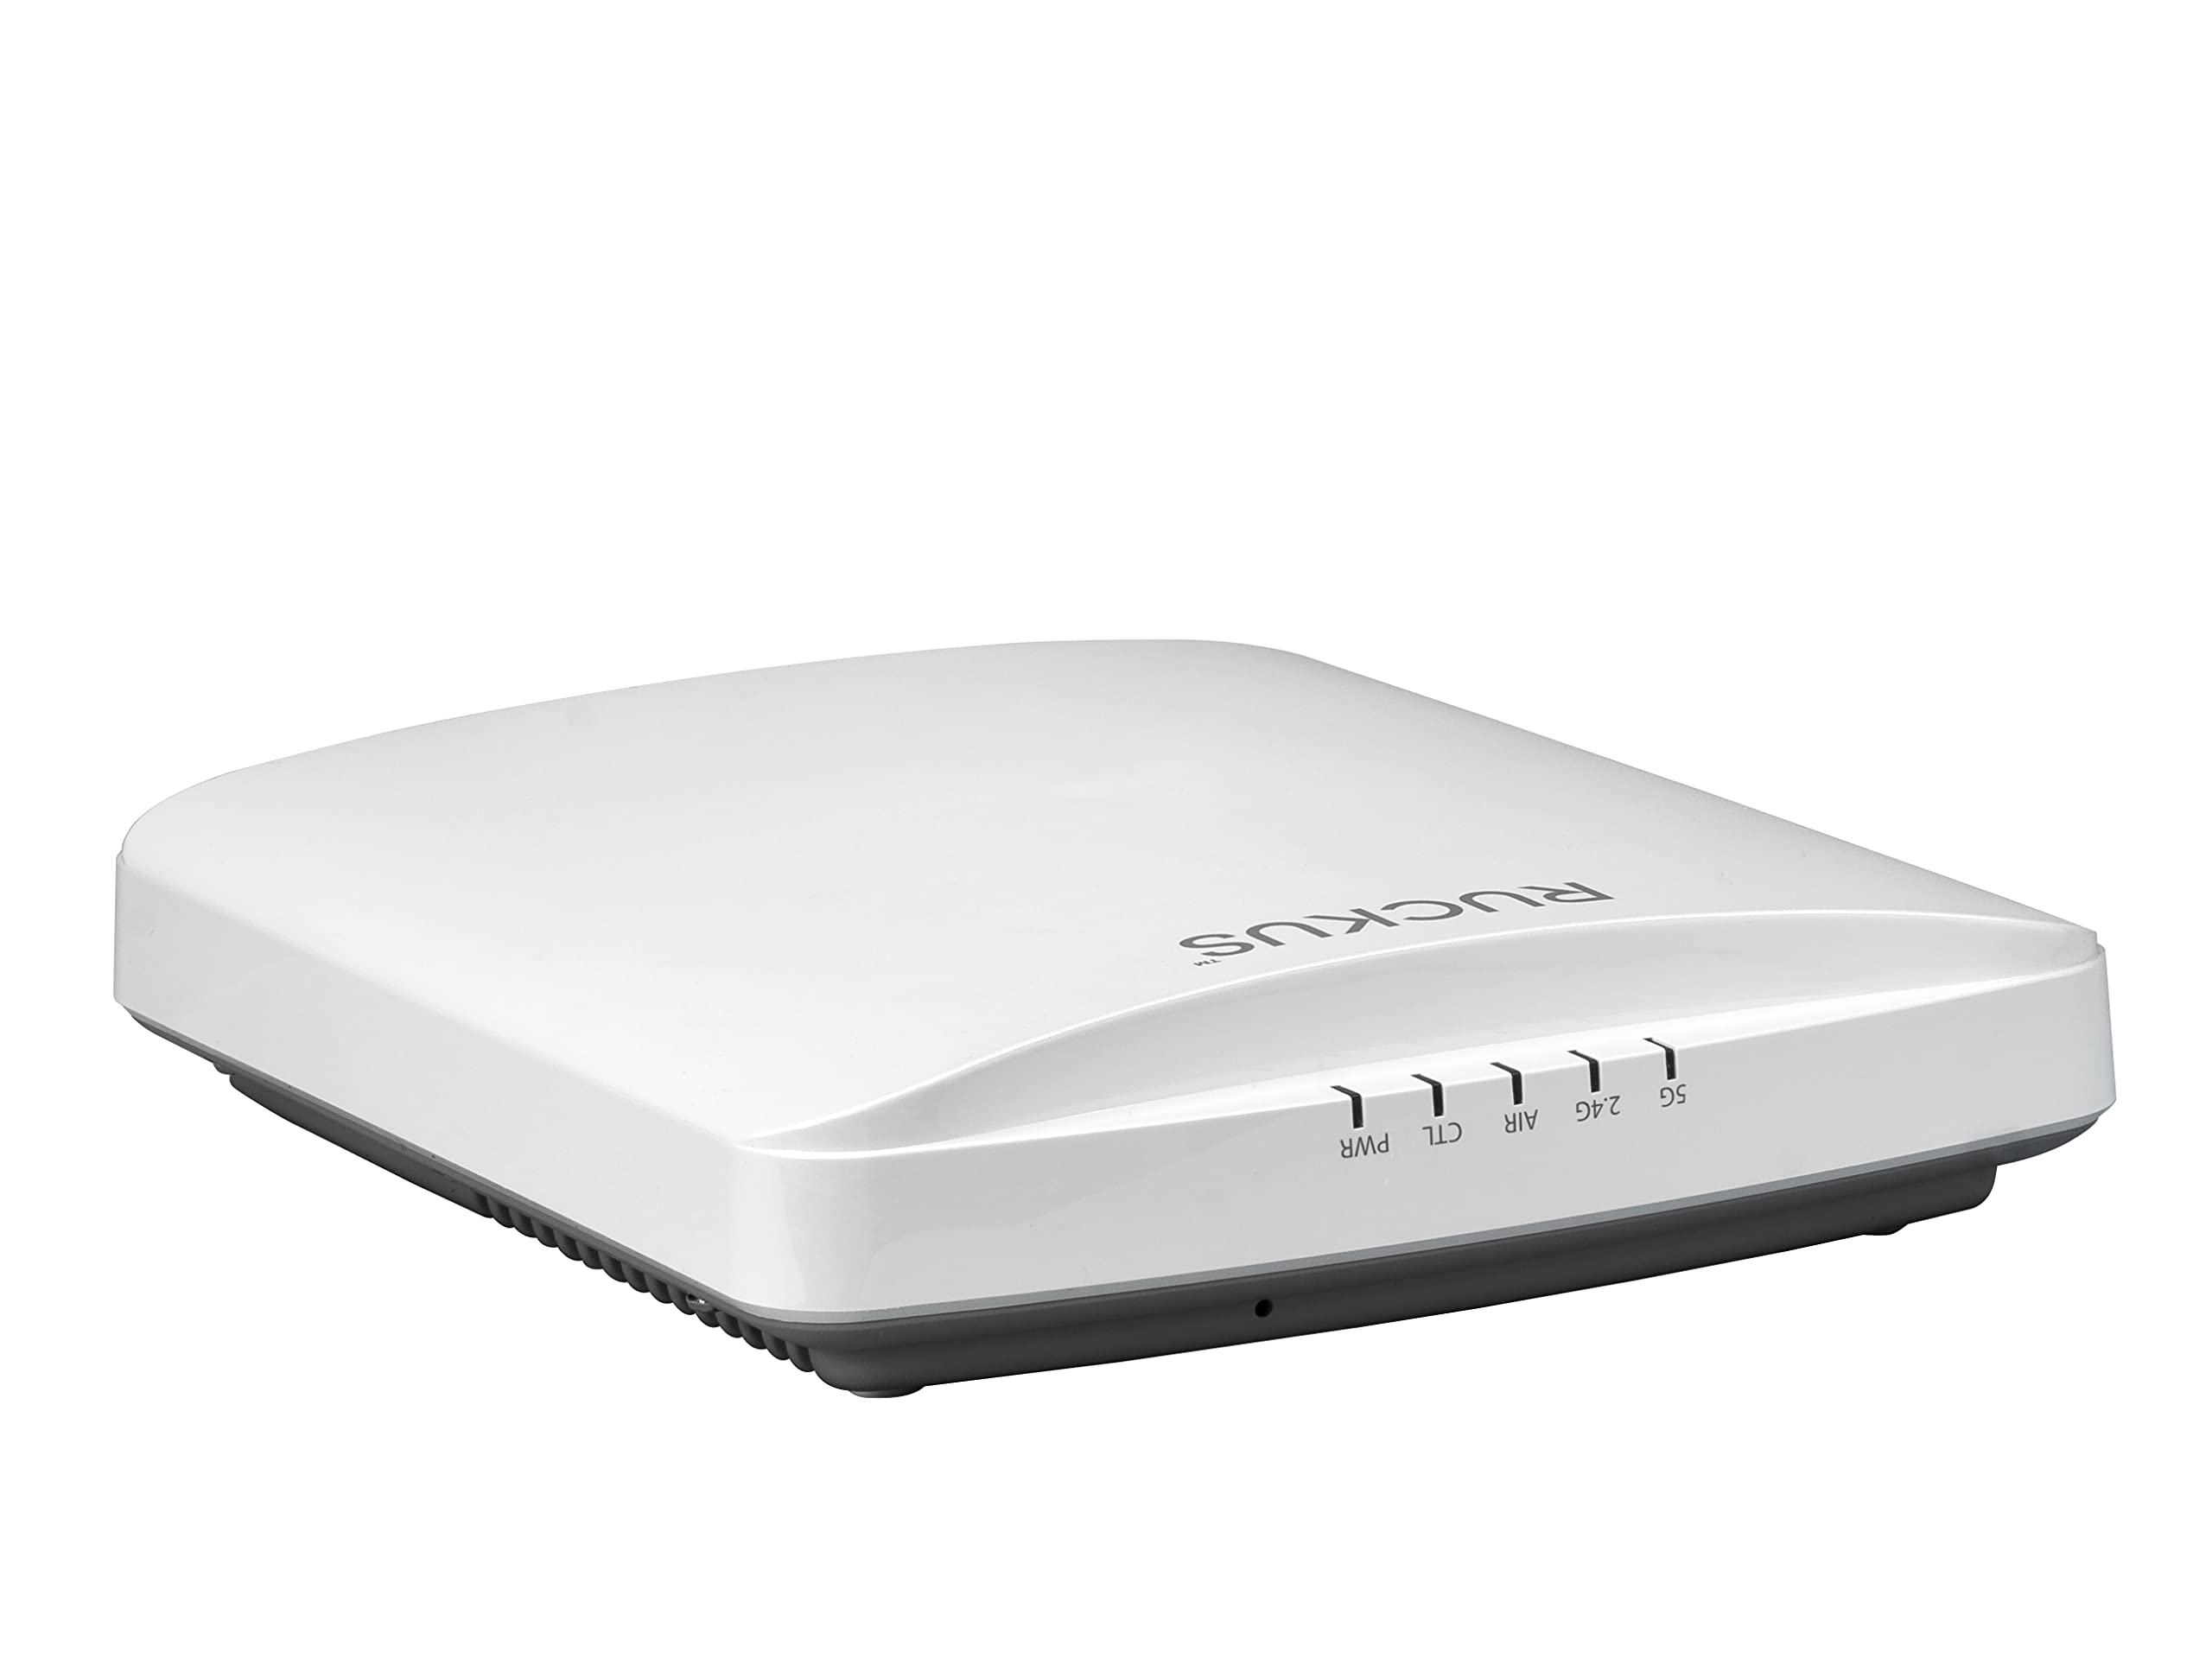 Ruckus R650 Wi-Fi 6 (802.11ax) 4x4:4 Wi-Fi Access Point (901-R650-US00)